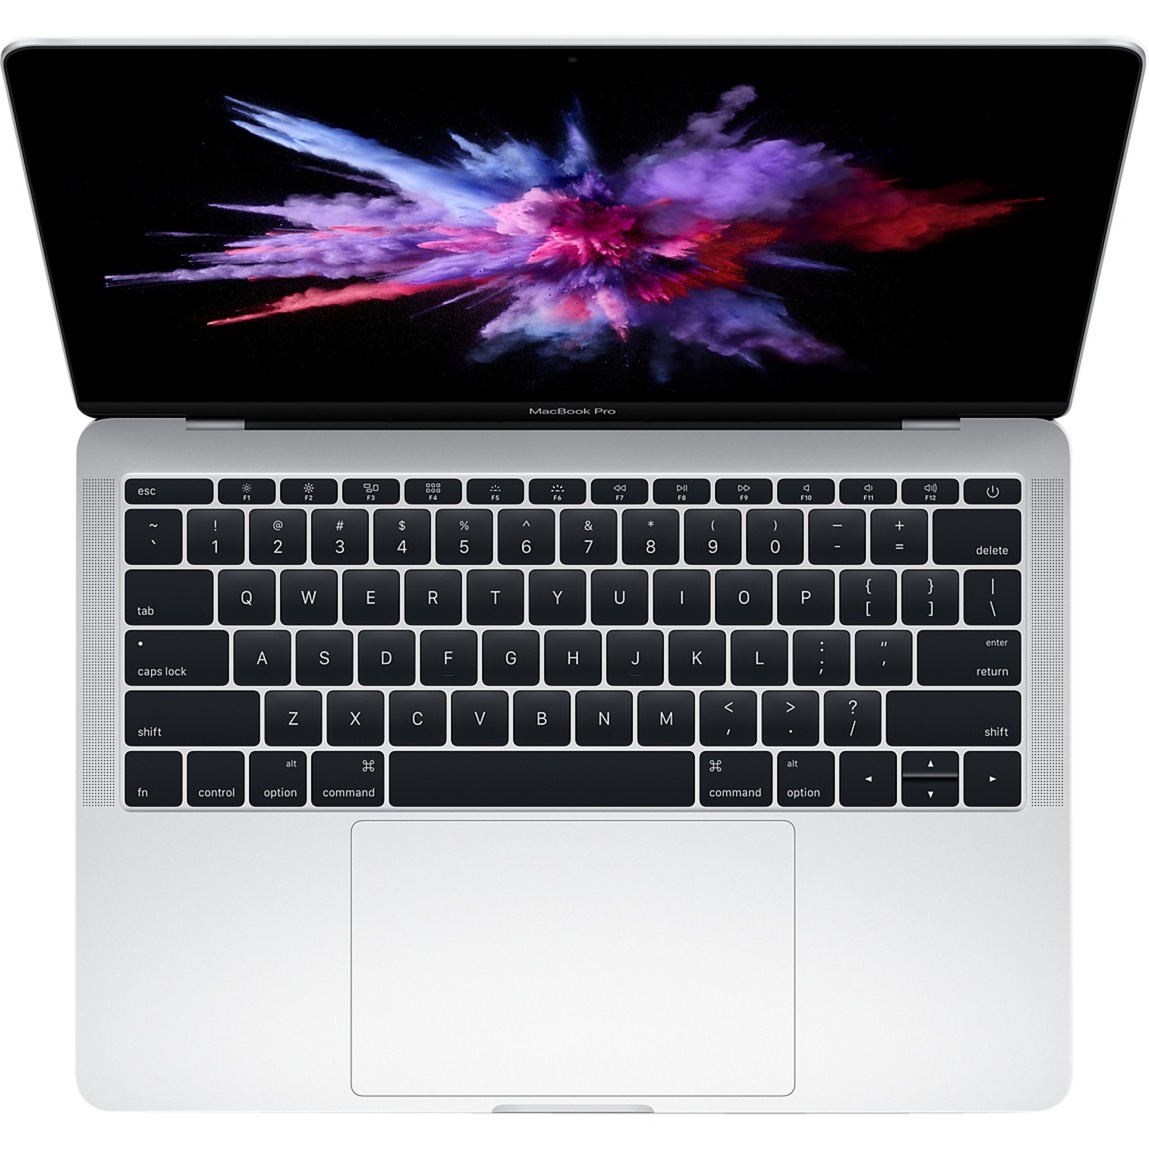 MacBook Pro Srebrny Notebook 33,8 cm (13.3") 2560 x 1600 piksele 2,3 GHz Intel Core i5 siódmej generacji